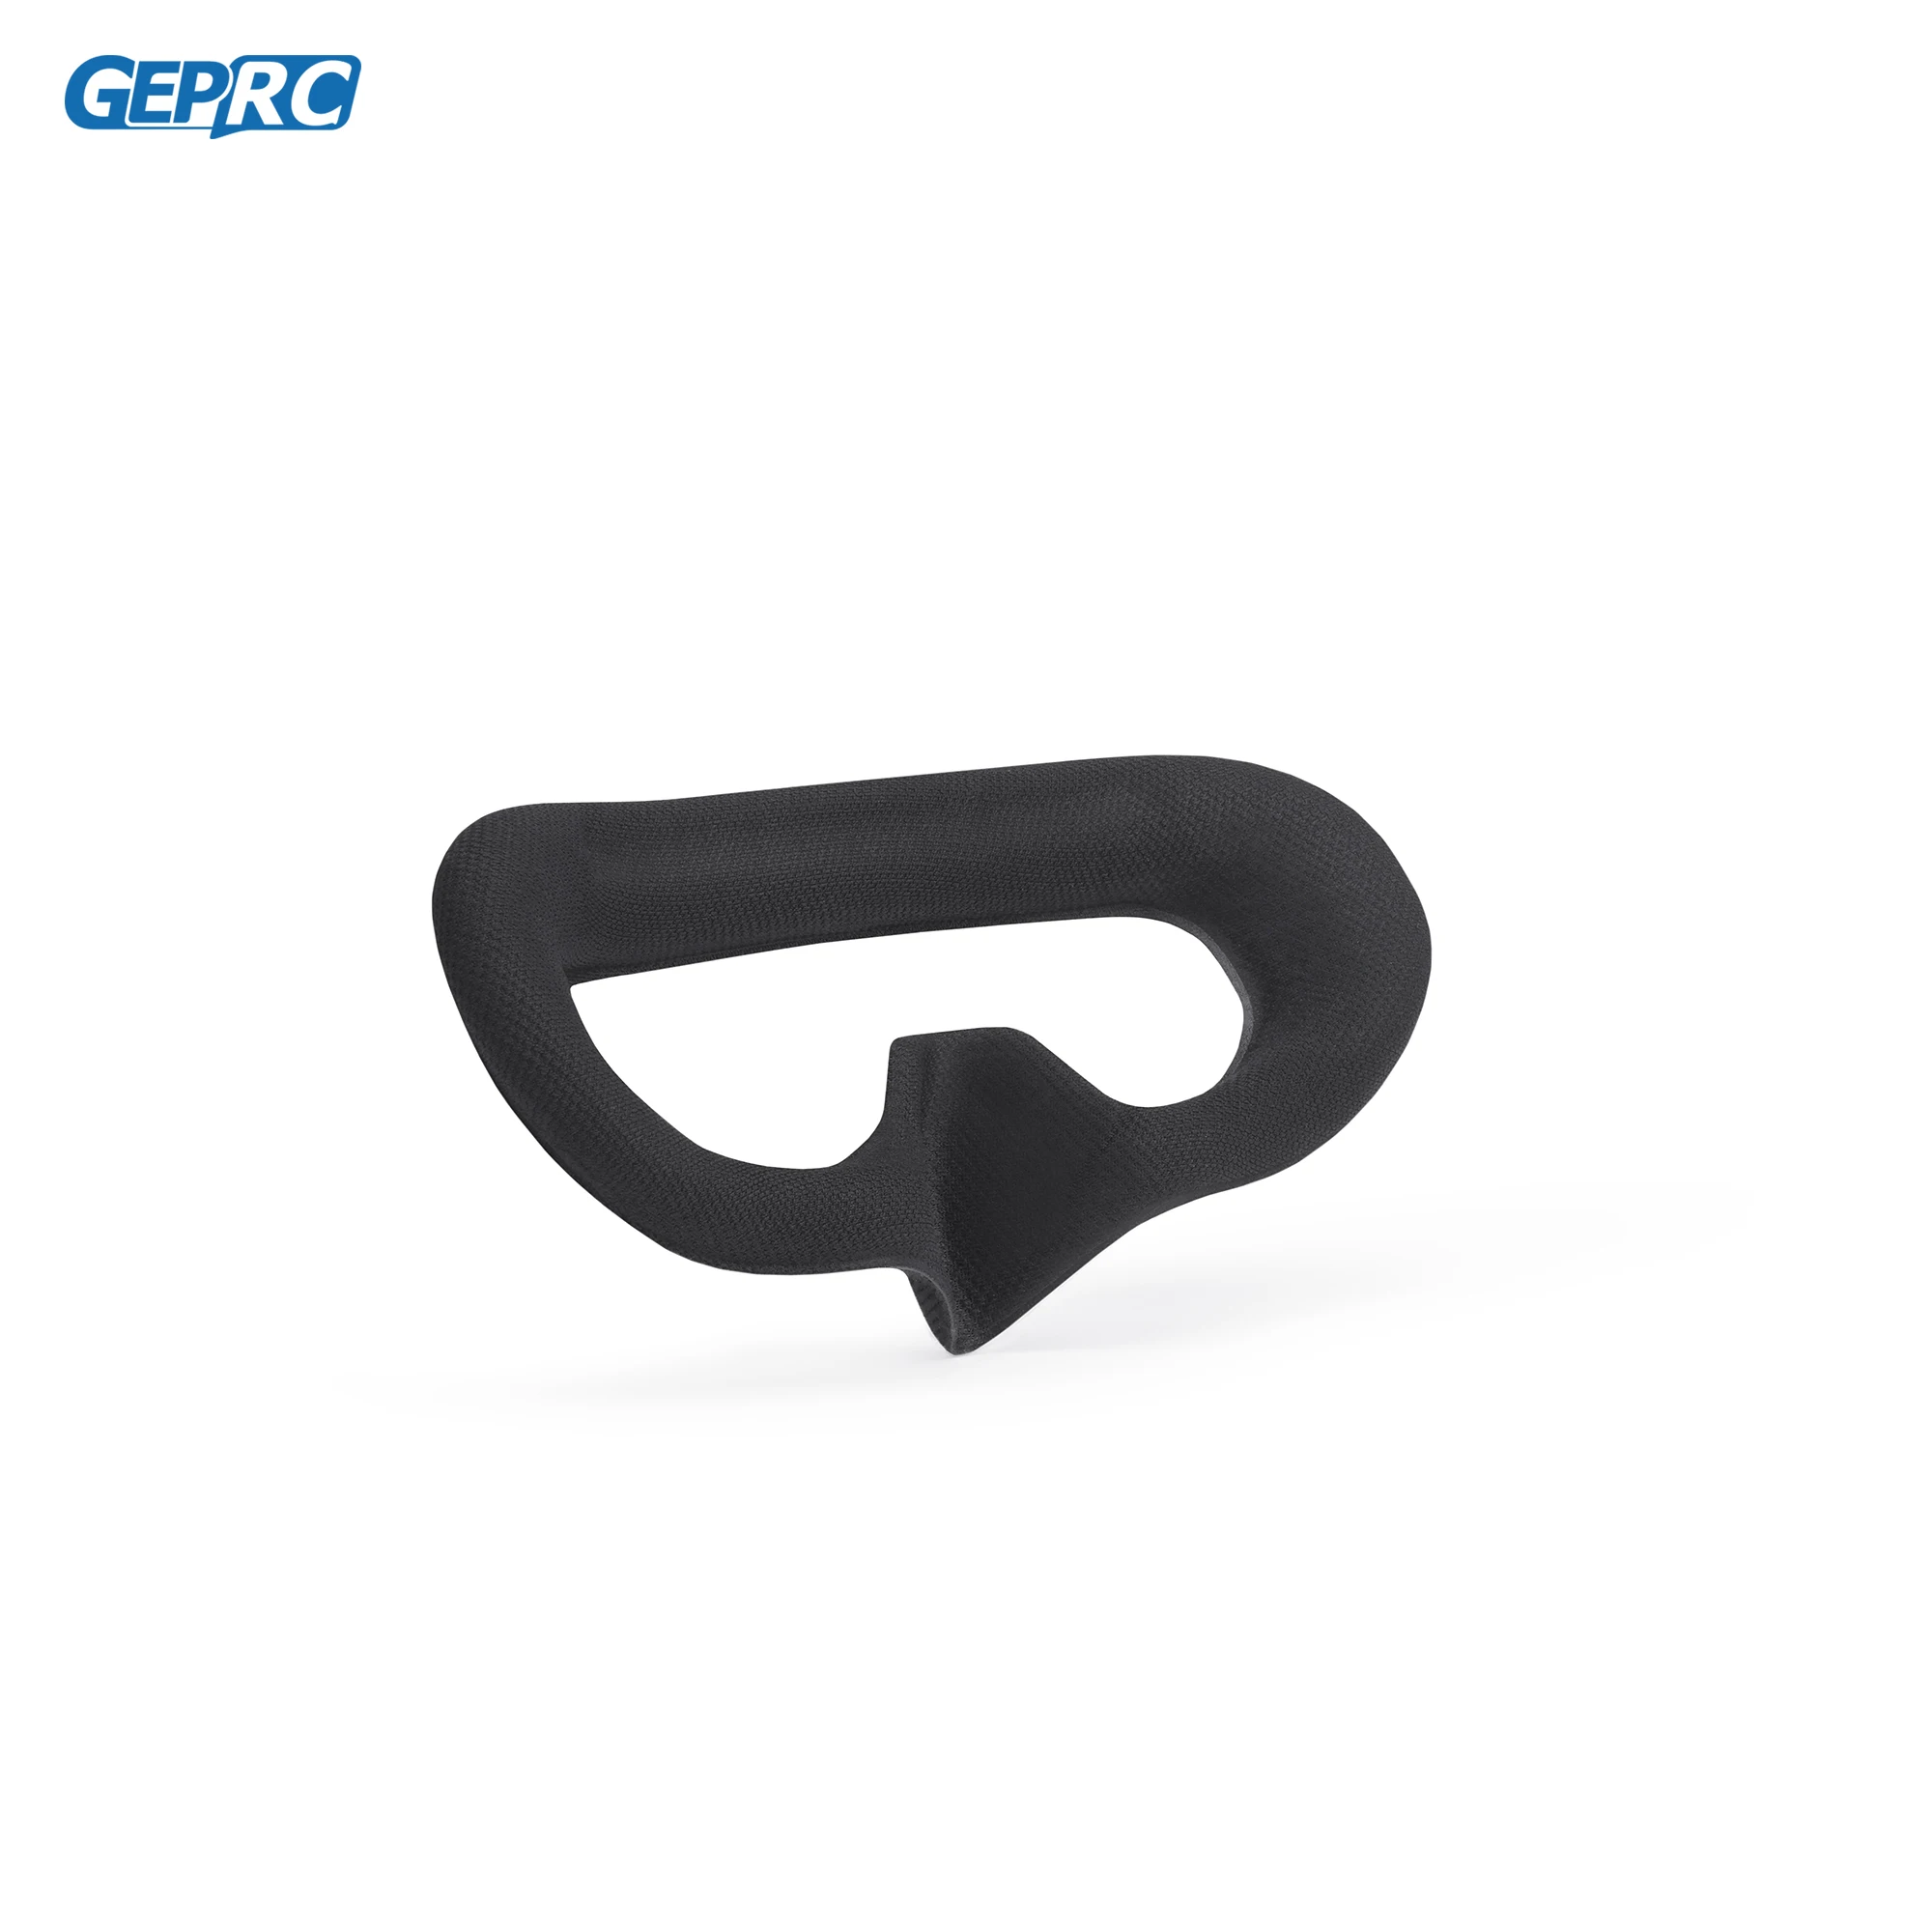 Сменные FPV-очки GEPRC с поролоновой прокладкой совместимые DJI Goggles 2 /DJI Integra |